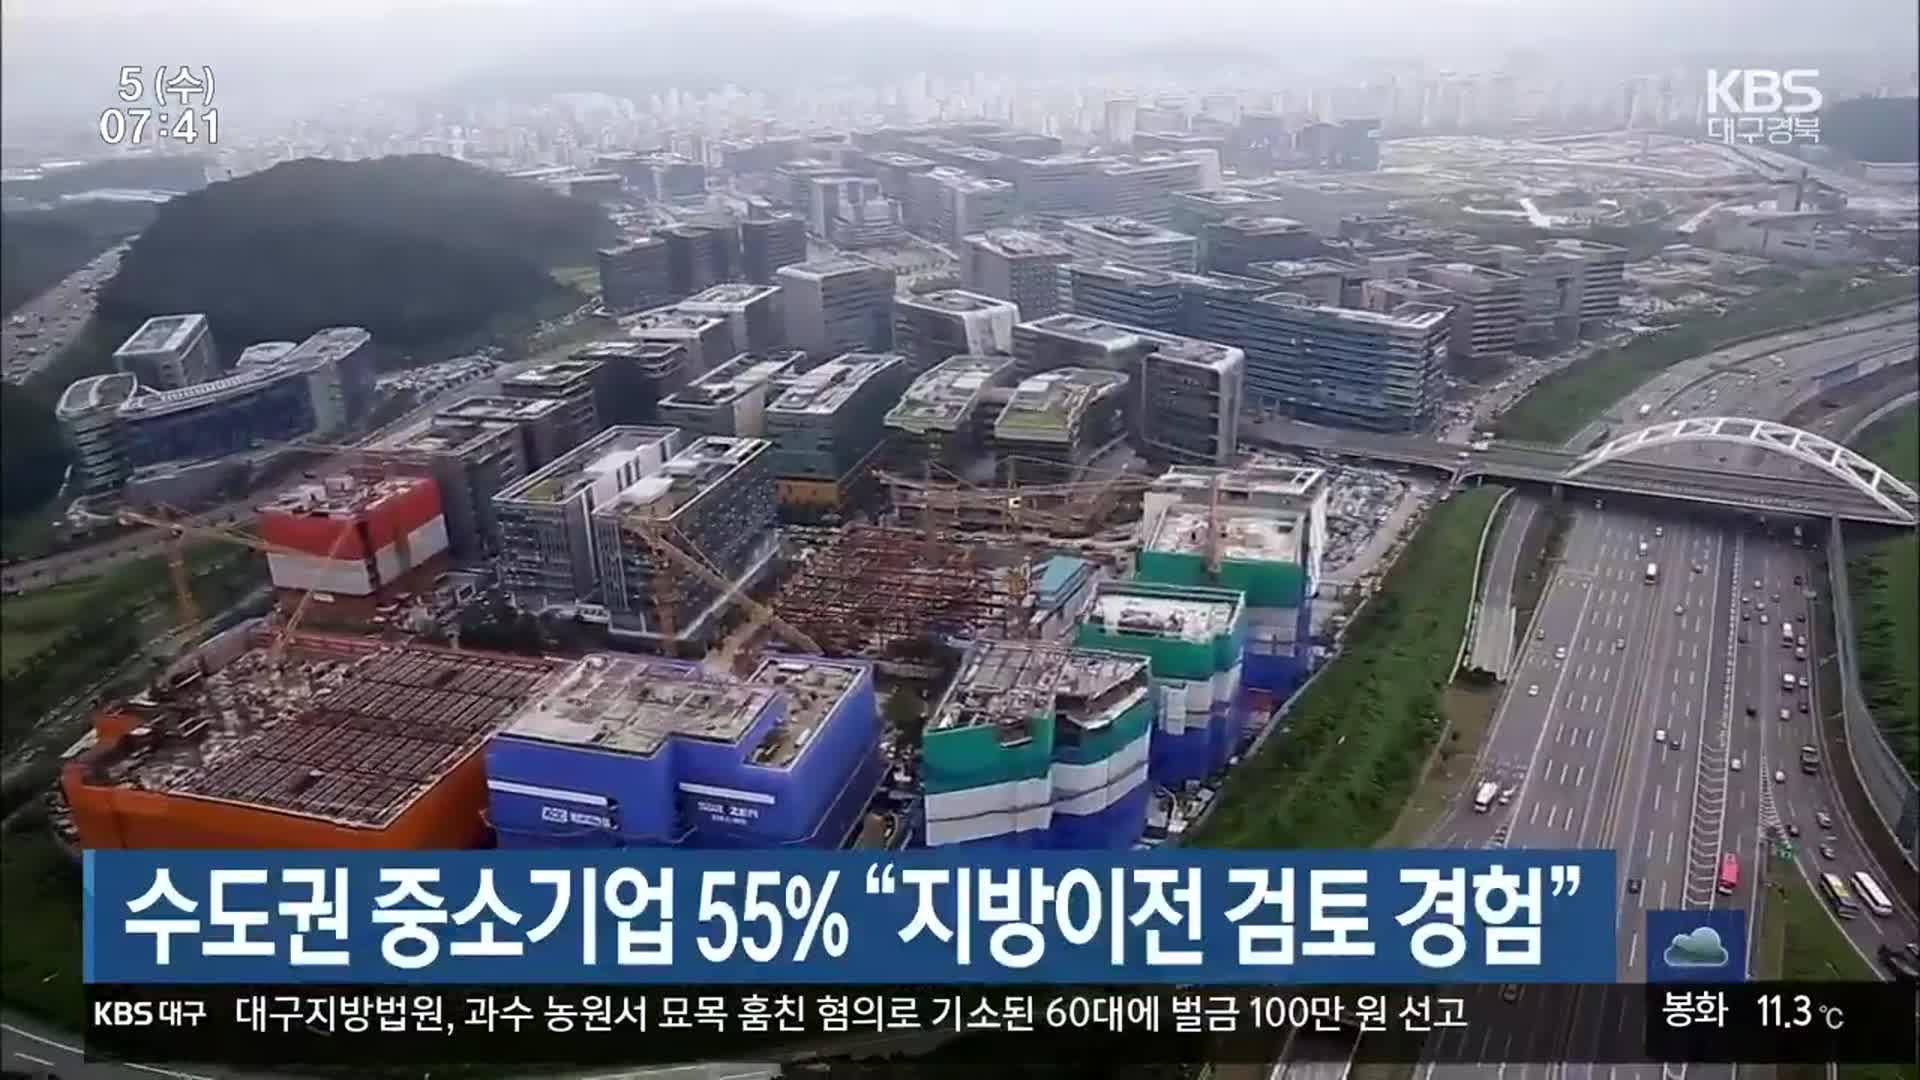 수도권 중소기업 55% “지방이전 검토 경험”